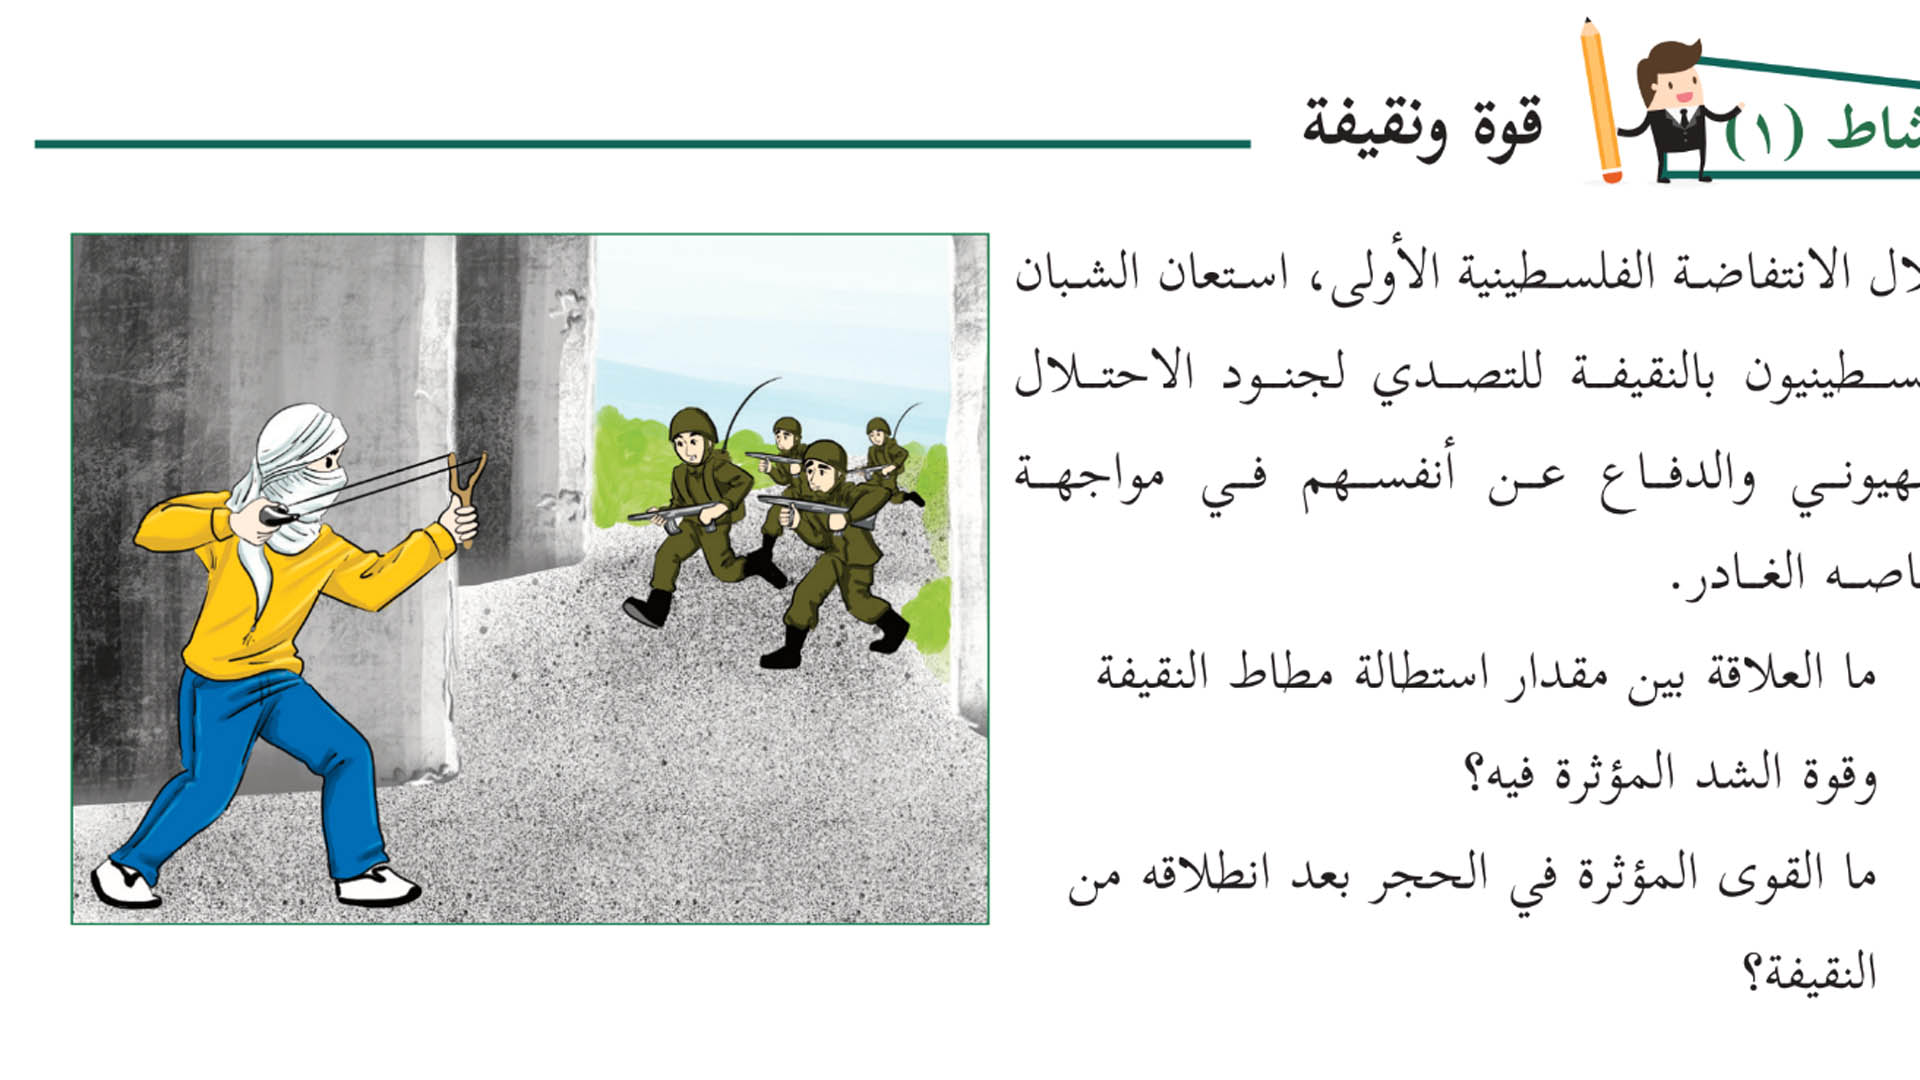 Physik für Siebtklässer: Ein palästinensisches Schulbuch erklärt Newtons zweites Gesetz mit einem Palästinenser, der israelische Soldaten attackiert